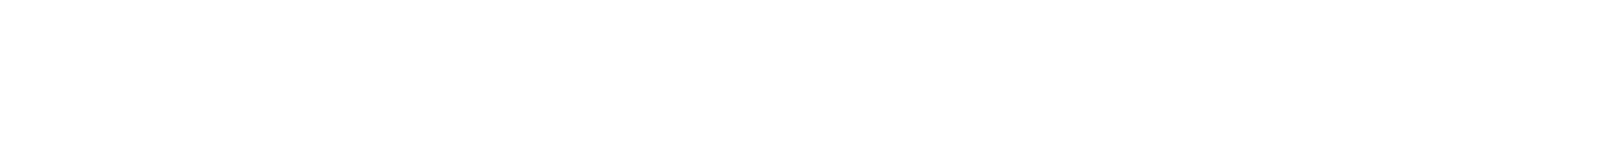 Lennar logo grand pour les fonds sombres (PNG transparent)